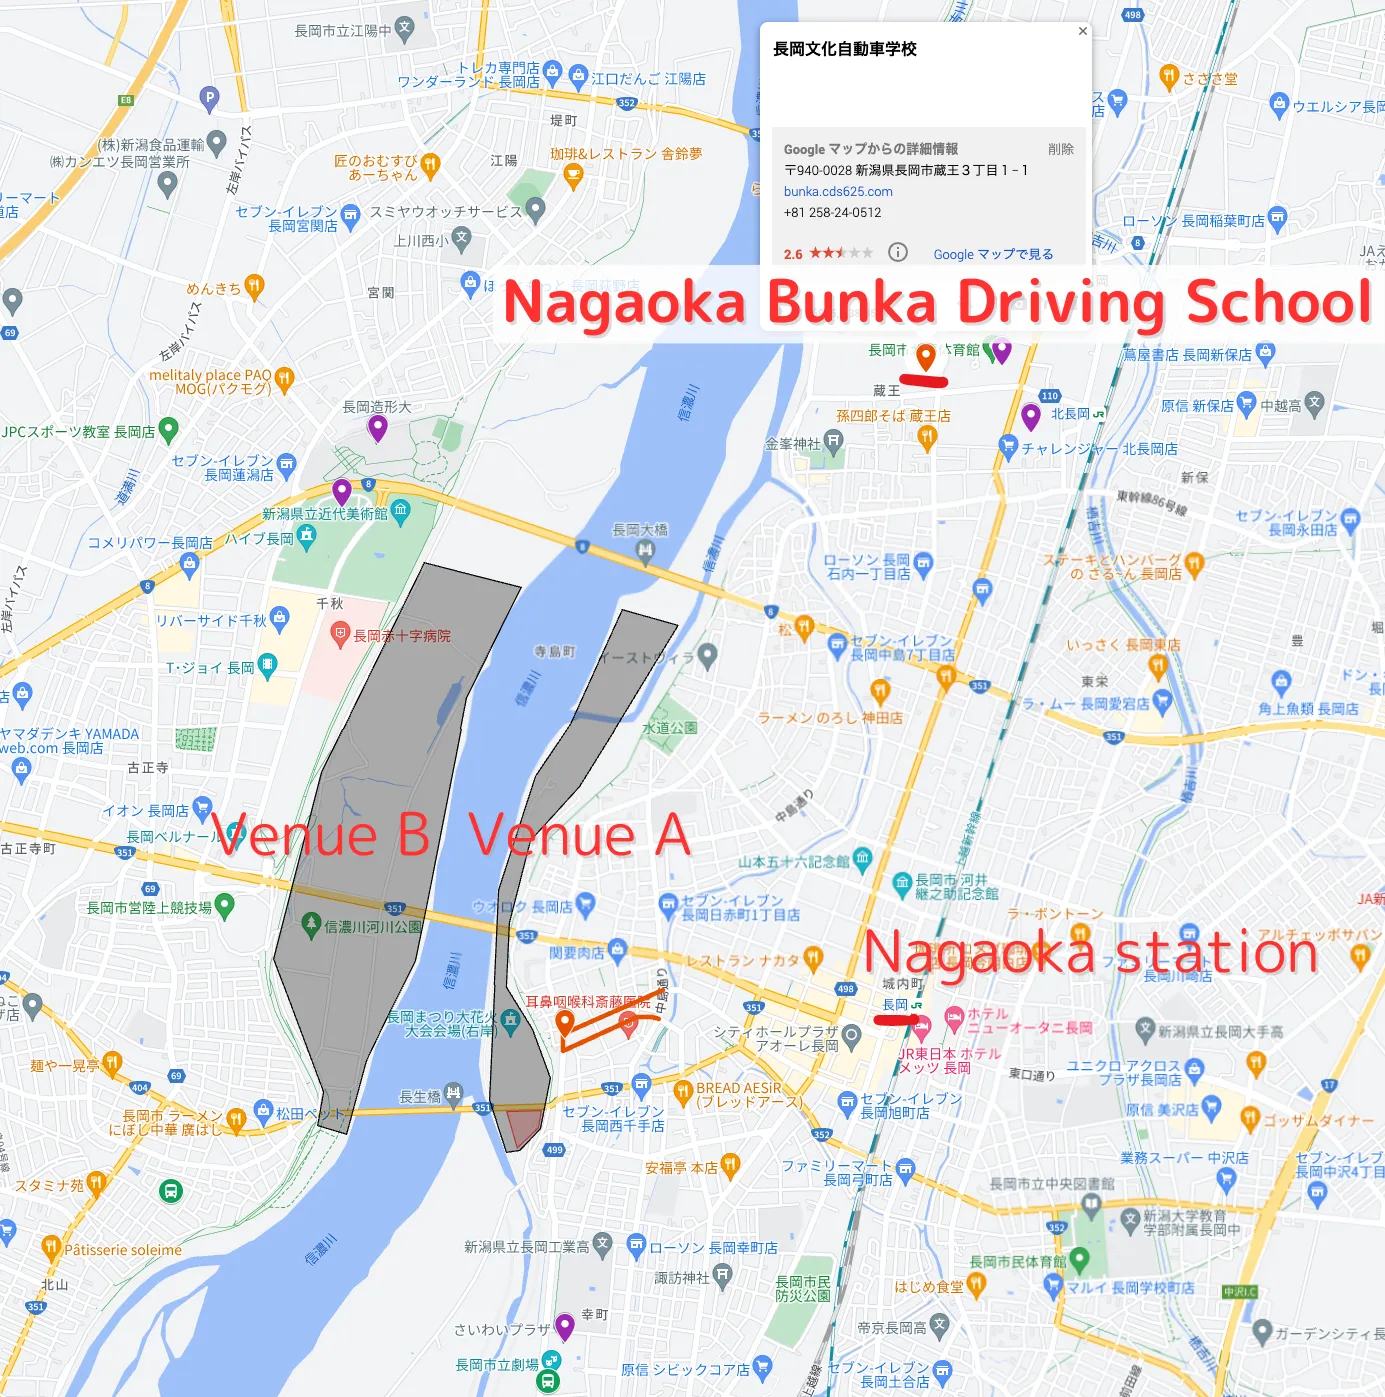 Mapa de la Escuela de Manejo de Nagaoka y el lugar